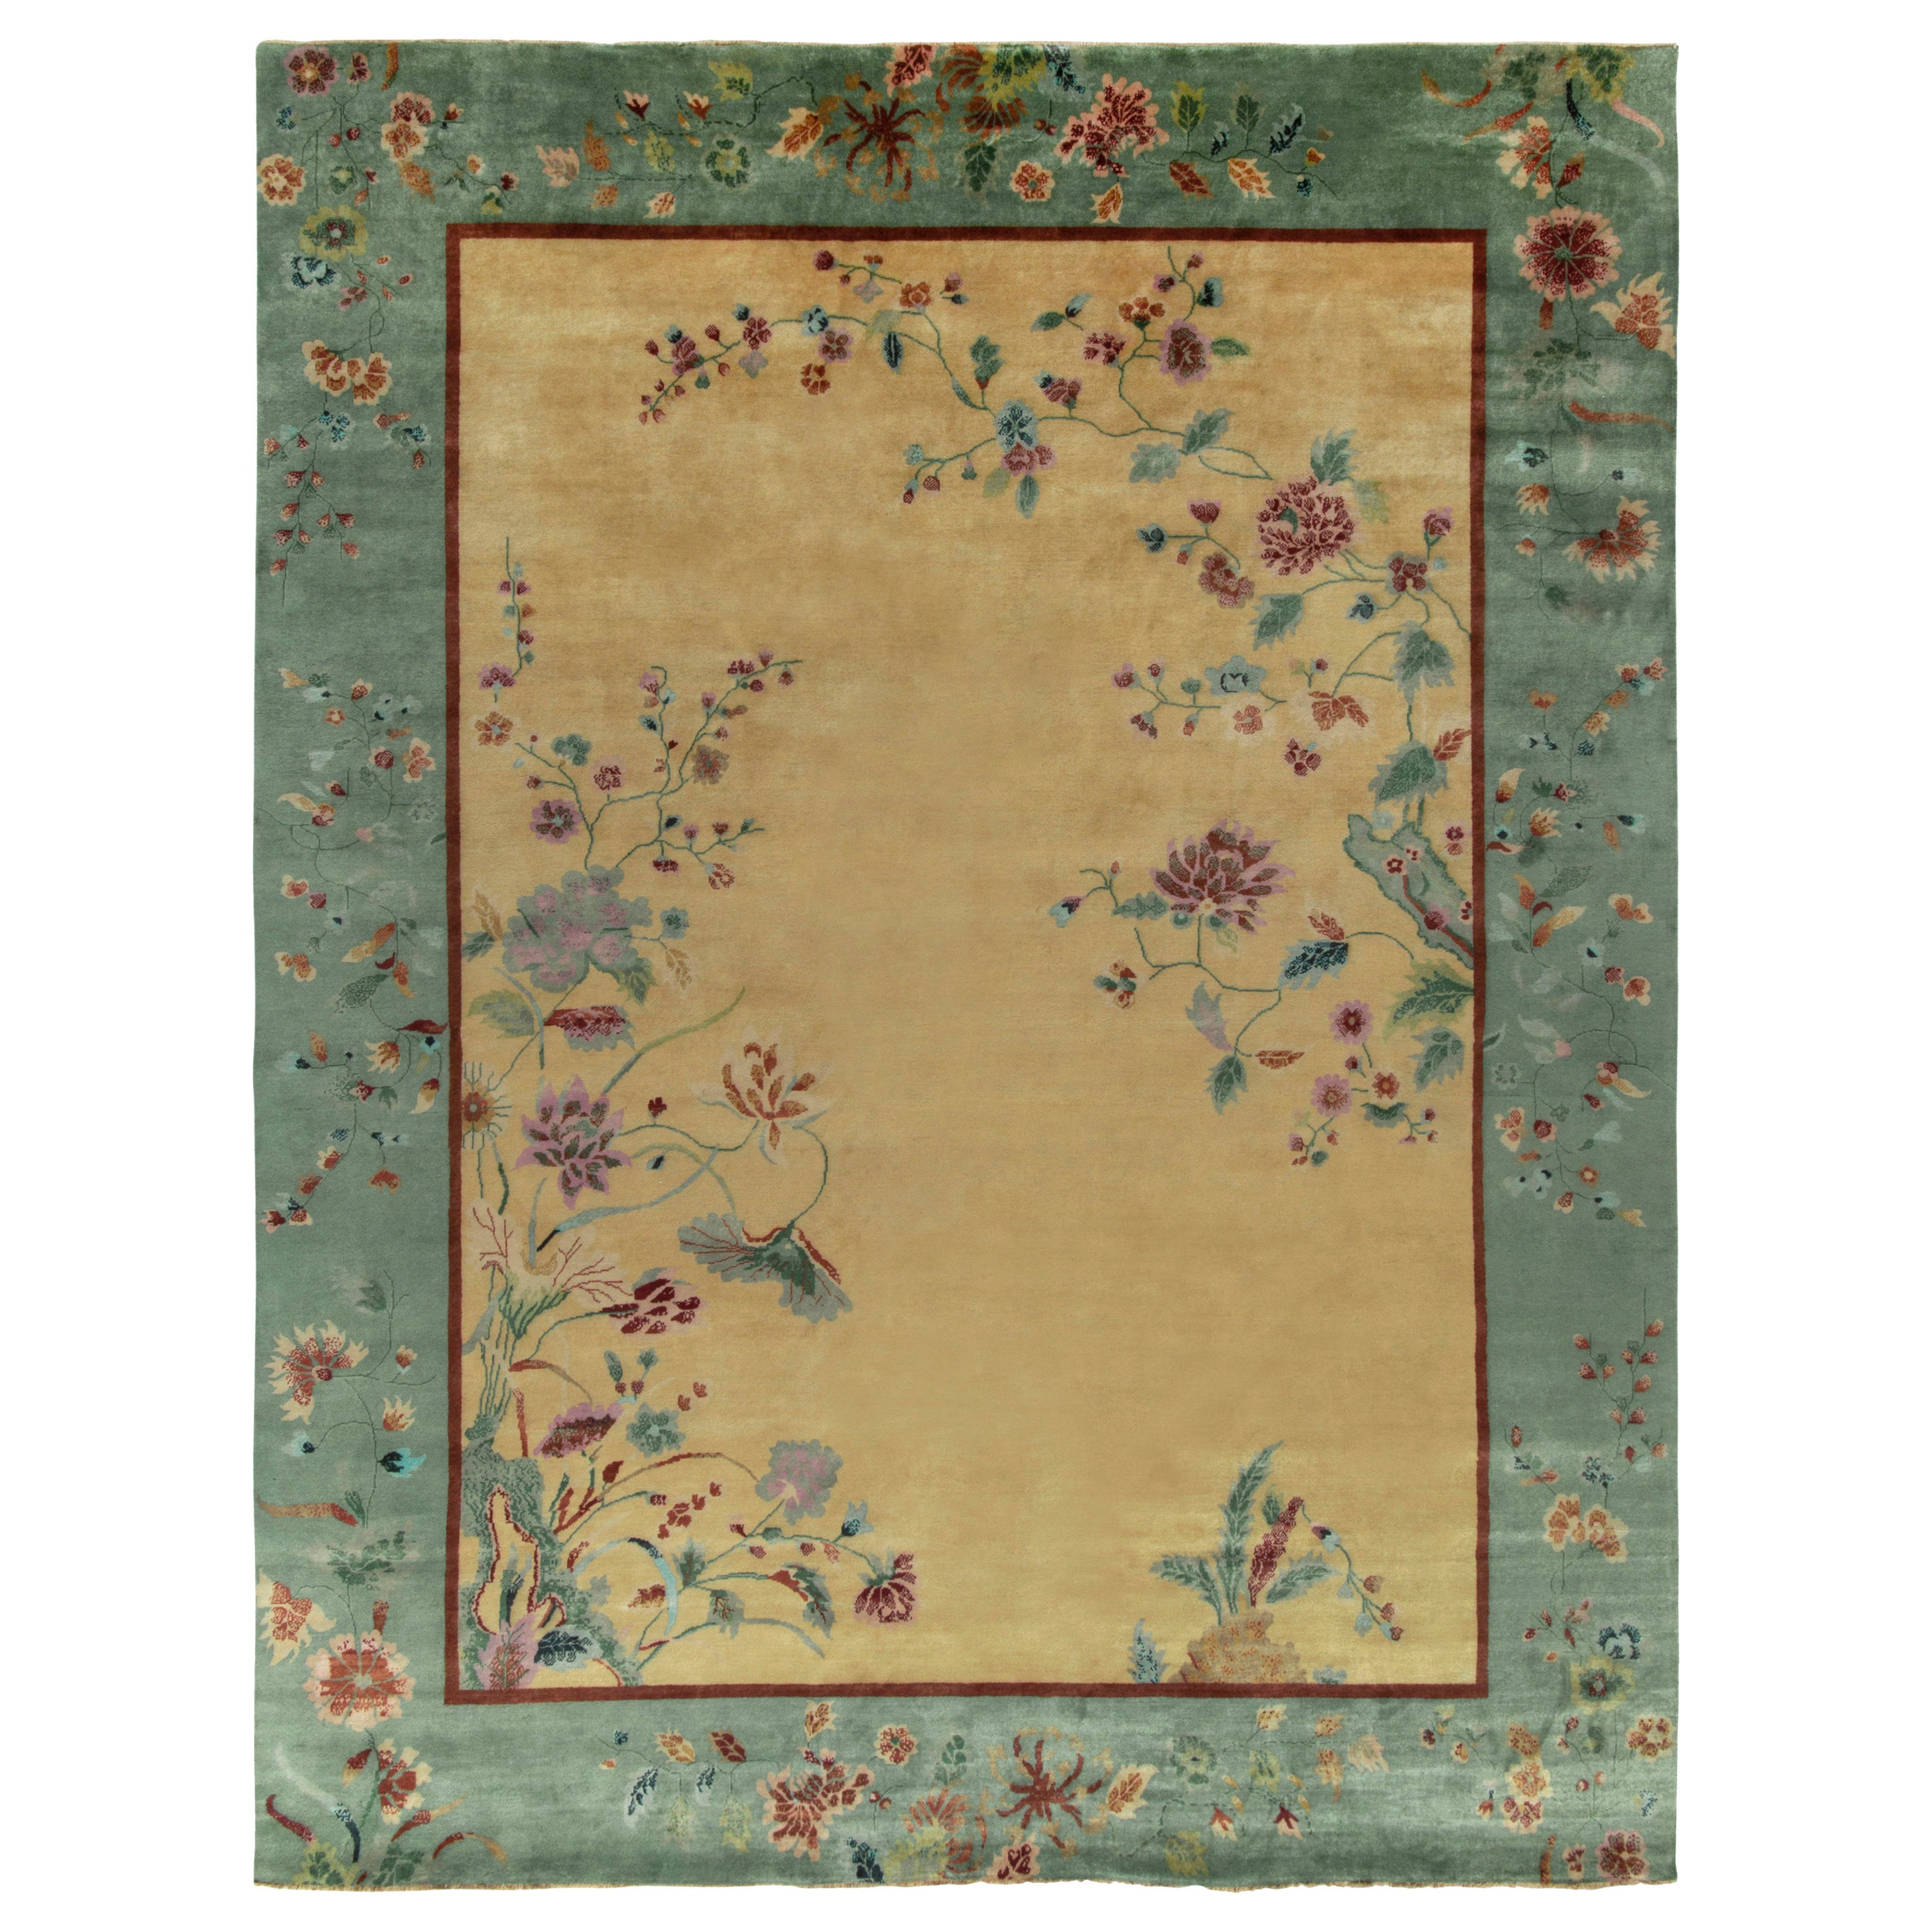 Chinesischer Deko-Teppich von Rug & Kilim mit blaugrüner Bordüre, goldenem Feld und Blumenmuster